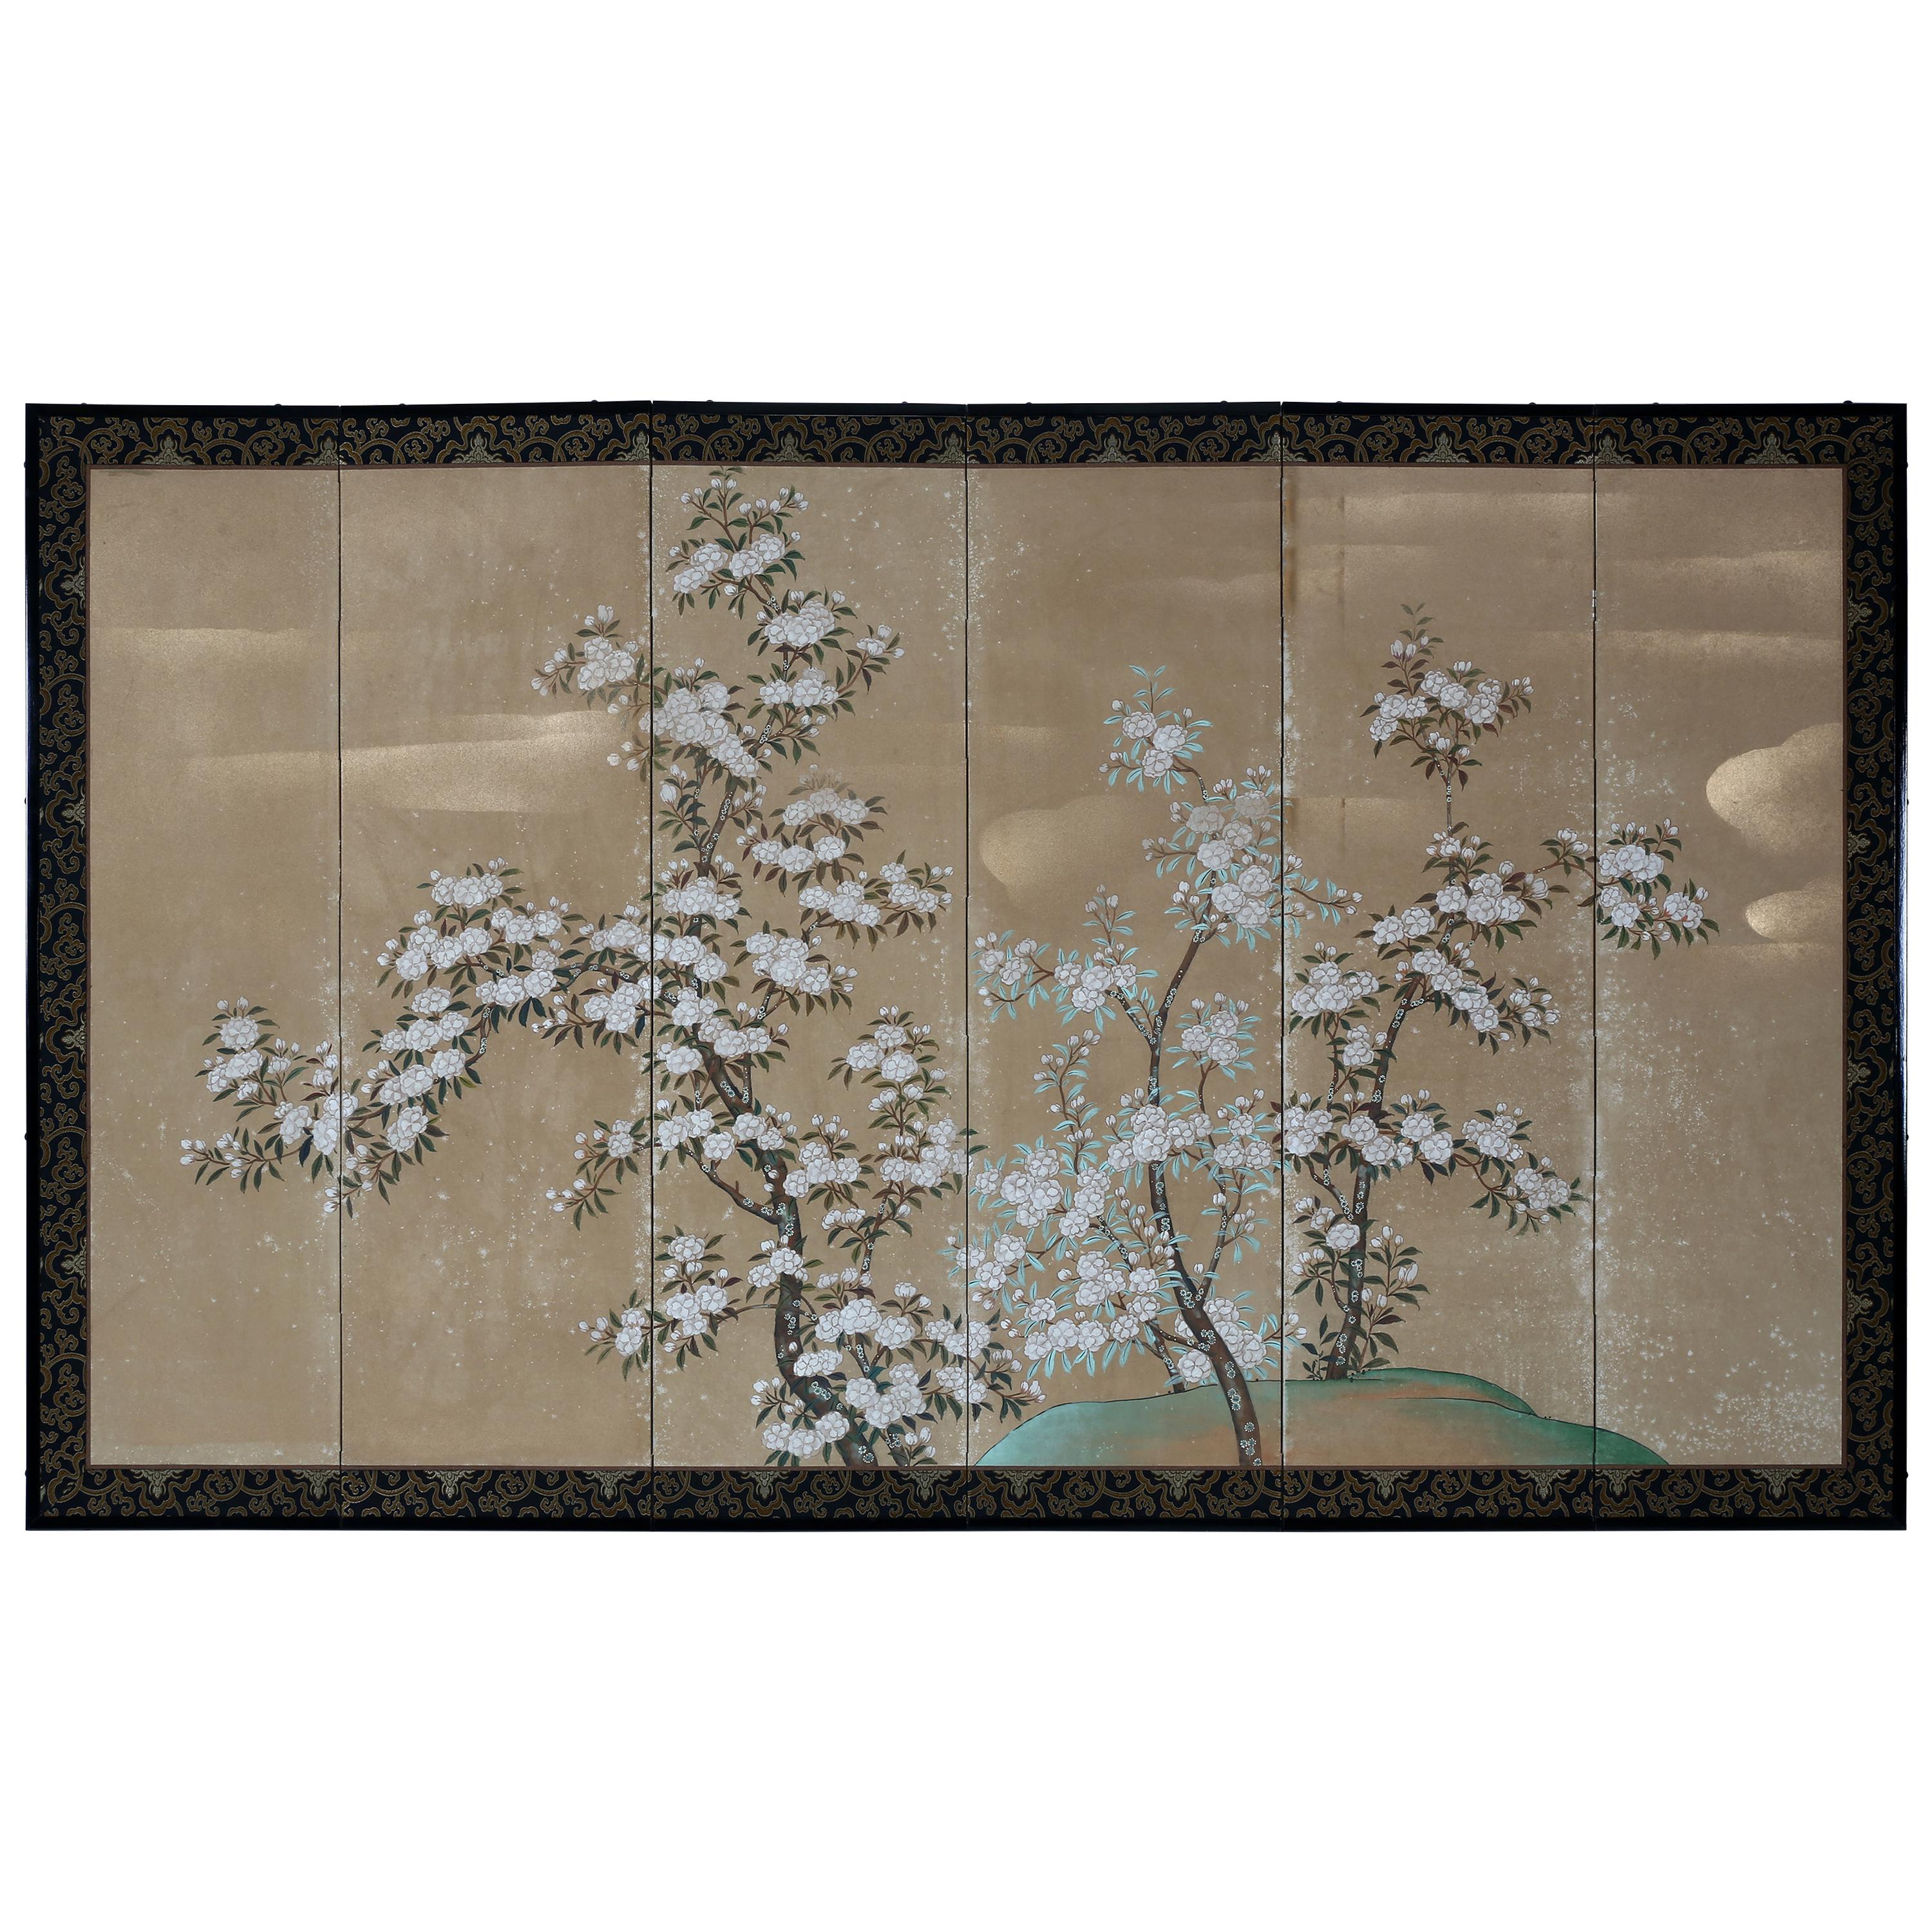 Hand Painted Japanese Folding Screen Byobu of White Sakura Blossom